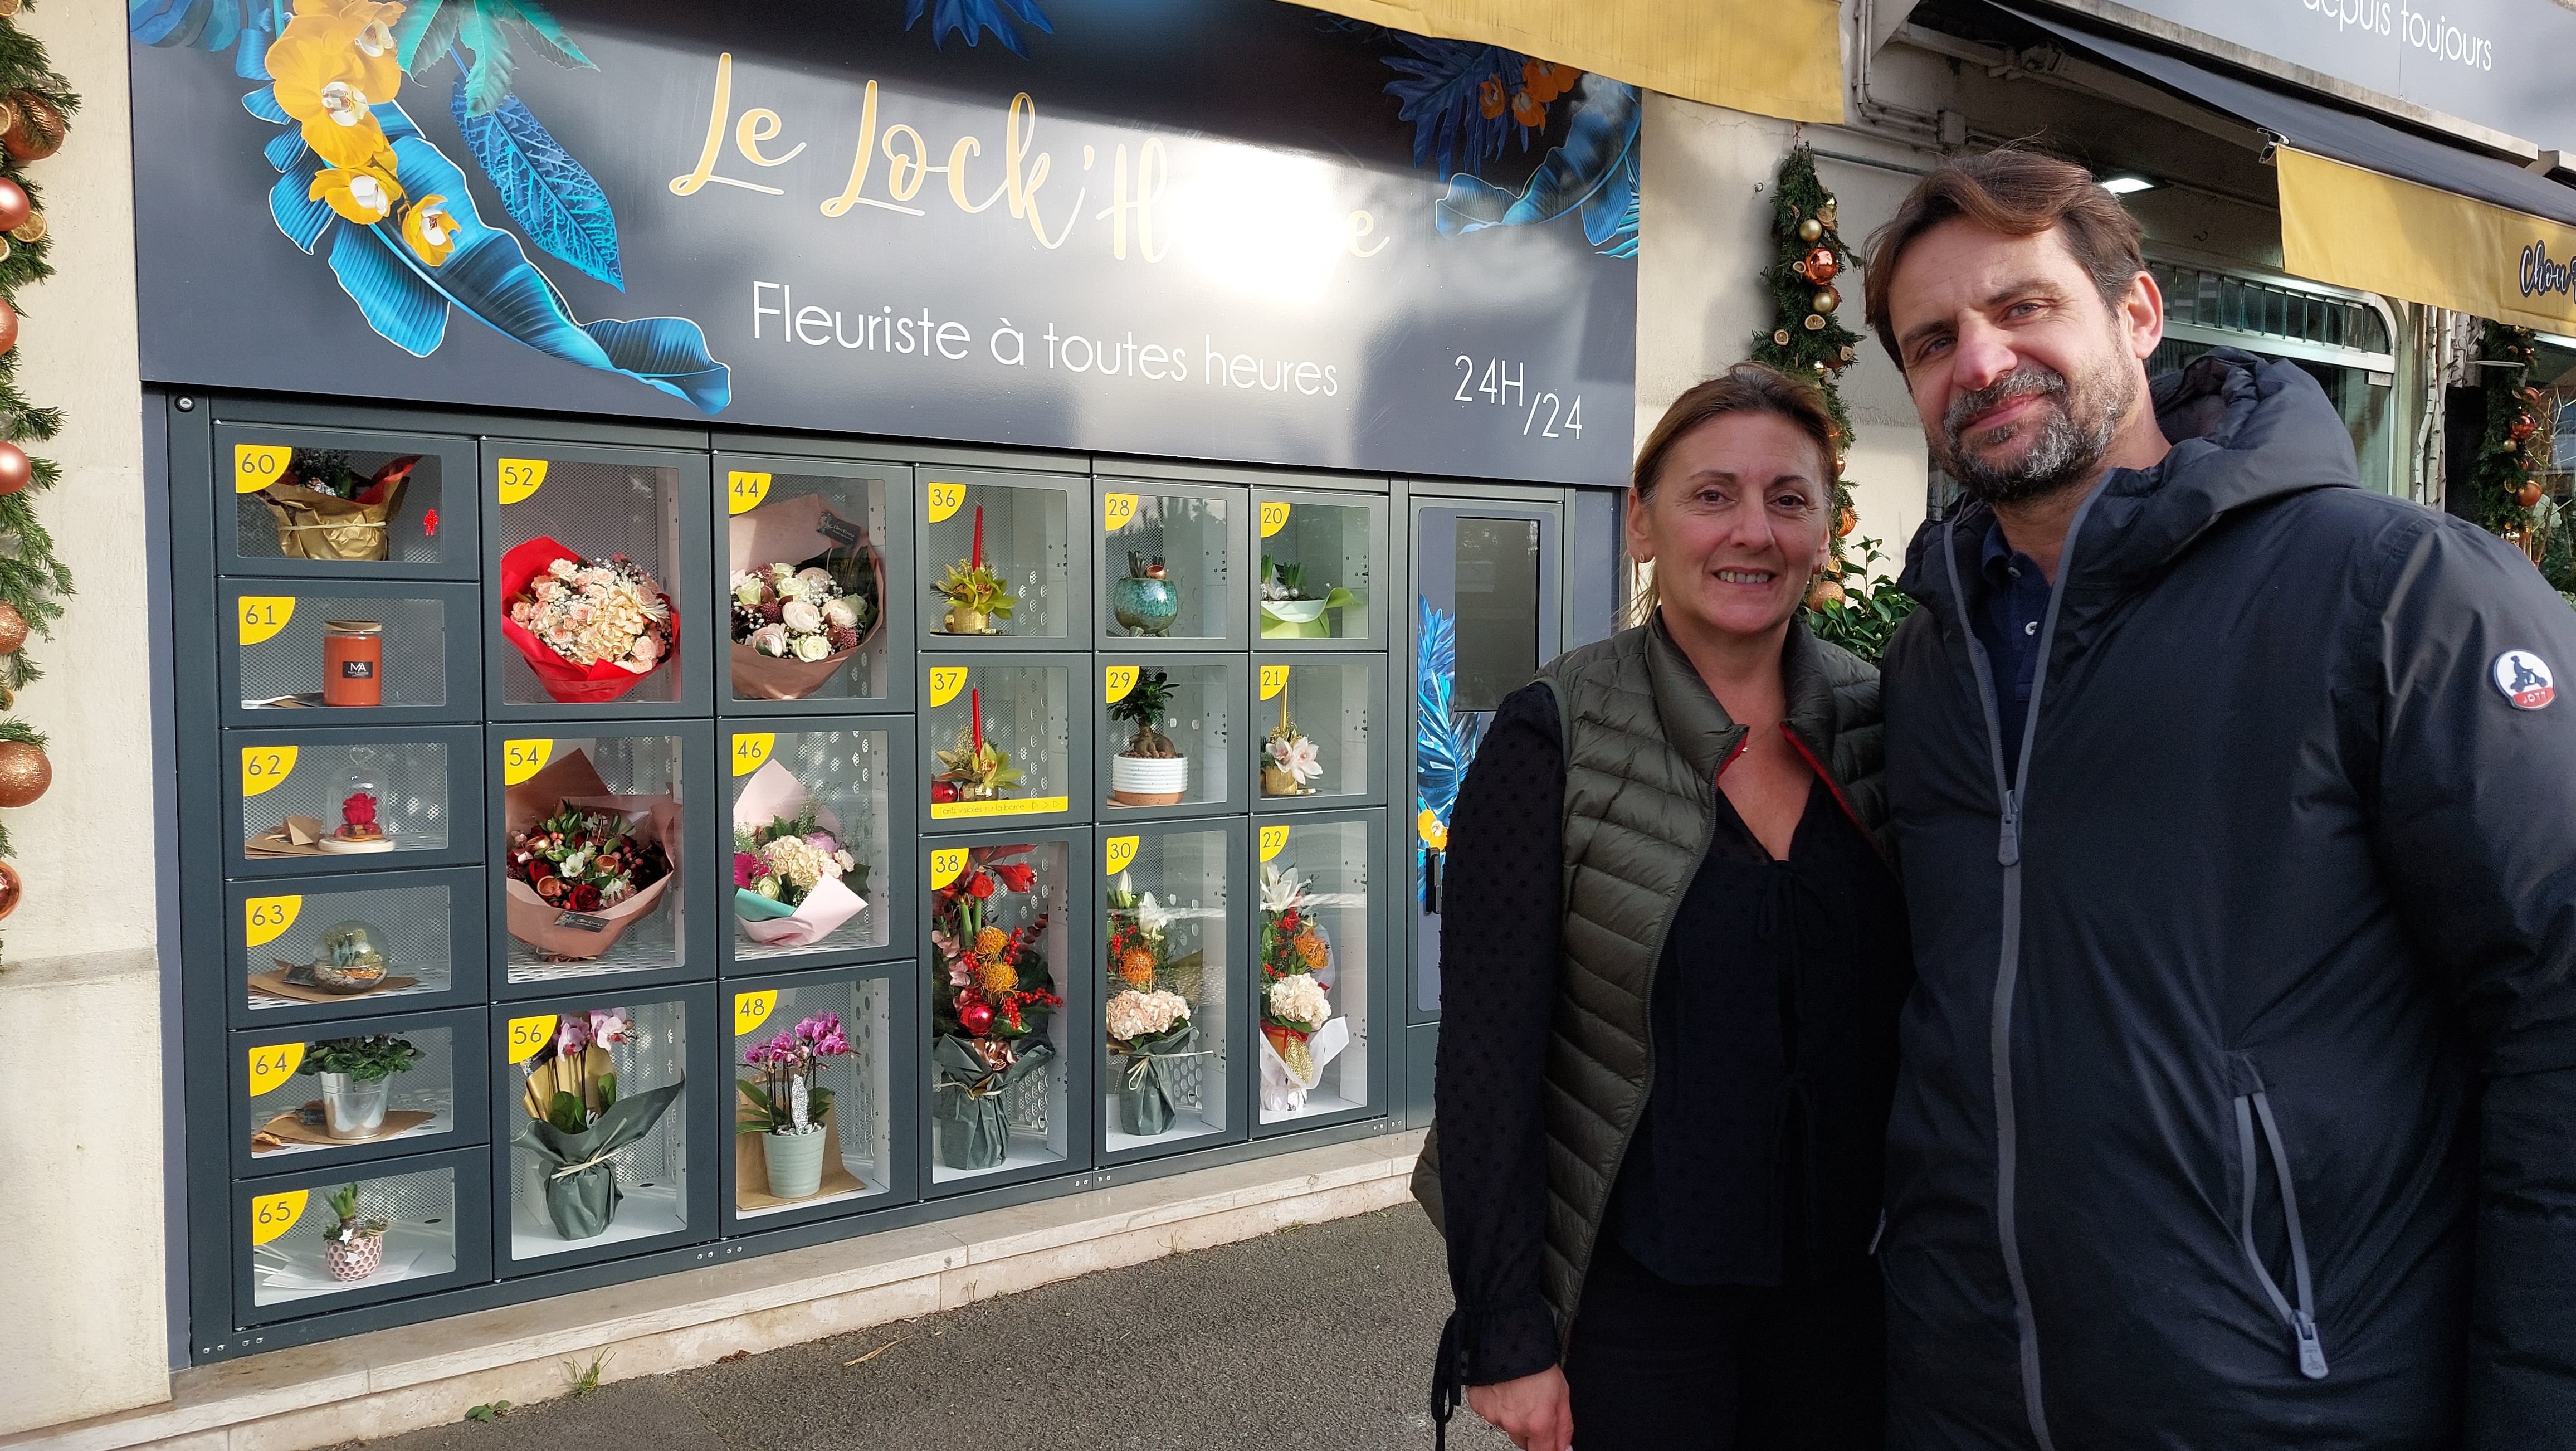 Gournay, le 27 décembre. Stéphane et Sophie Briand vendent des fleurs à toute heure. Ils ont installé un distributeur accessible depuis la rue, juste à côté de leur boutique. LP/Elsa Marnette